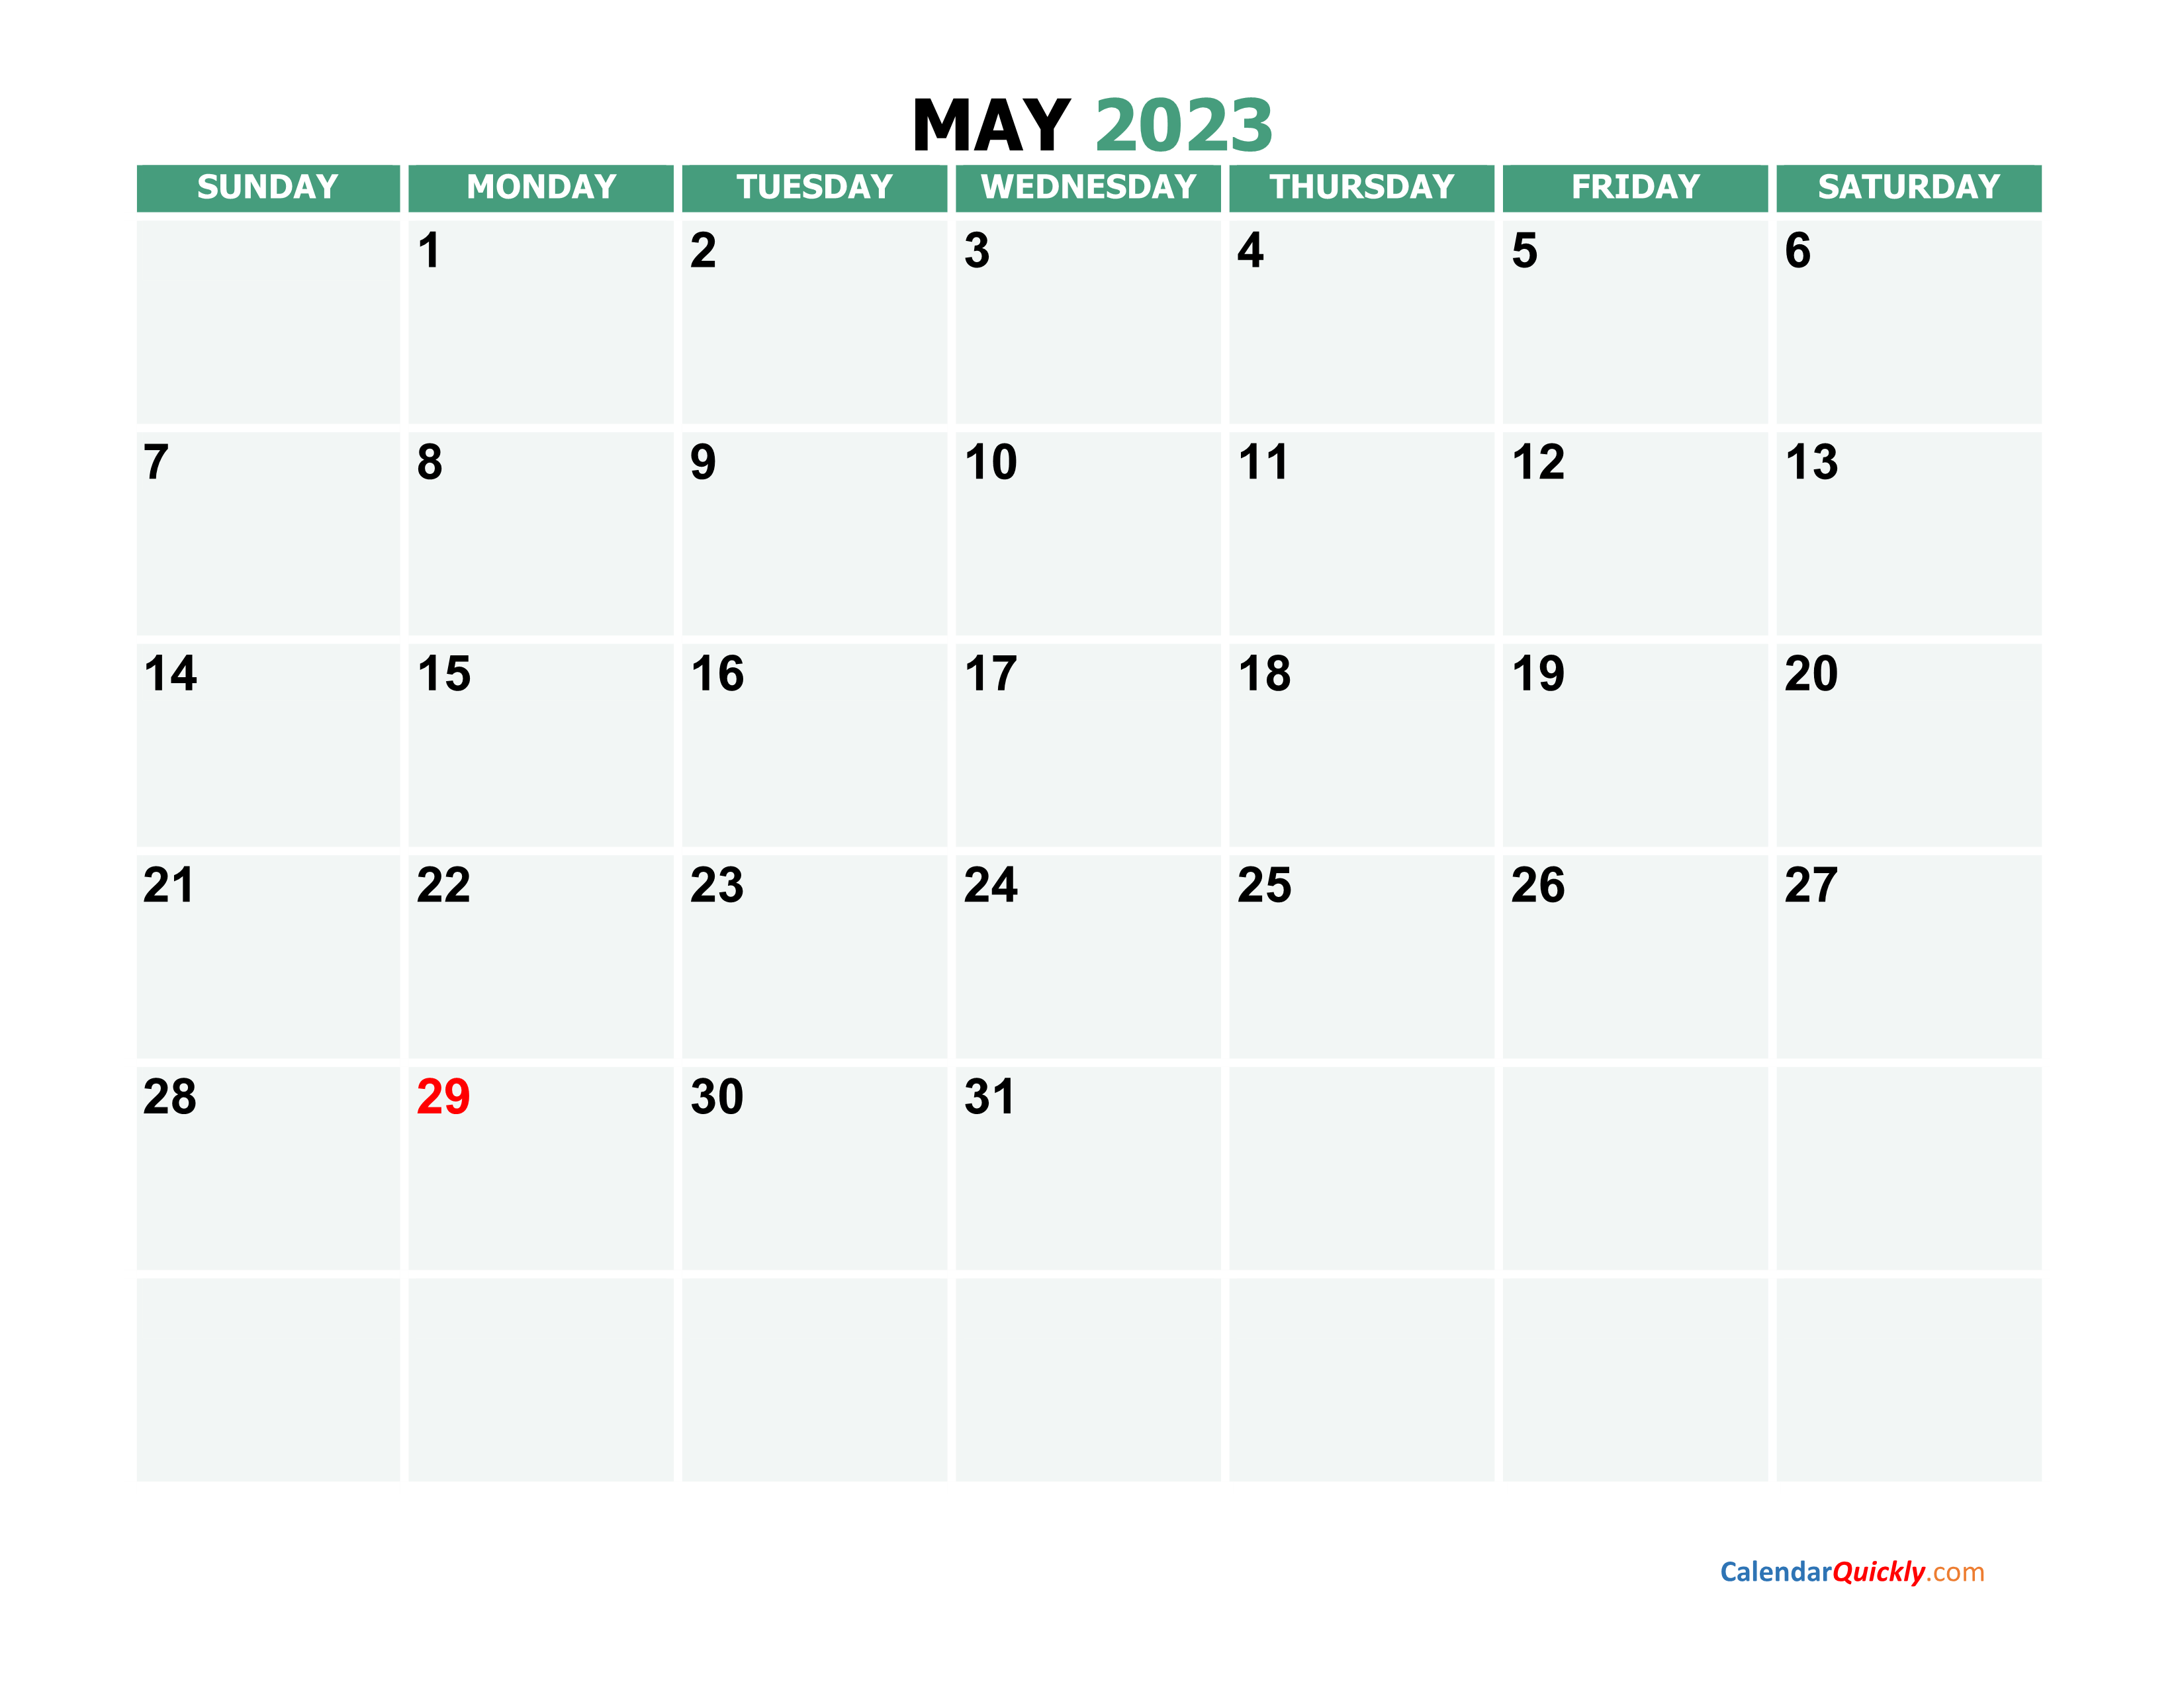 May 2023 Printable Calendar Calendar Quickly